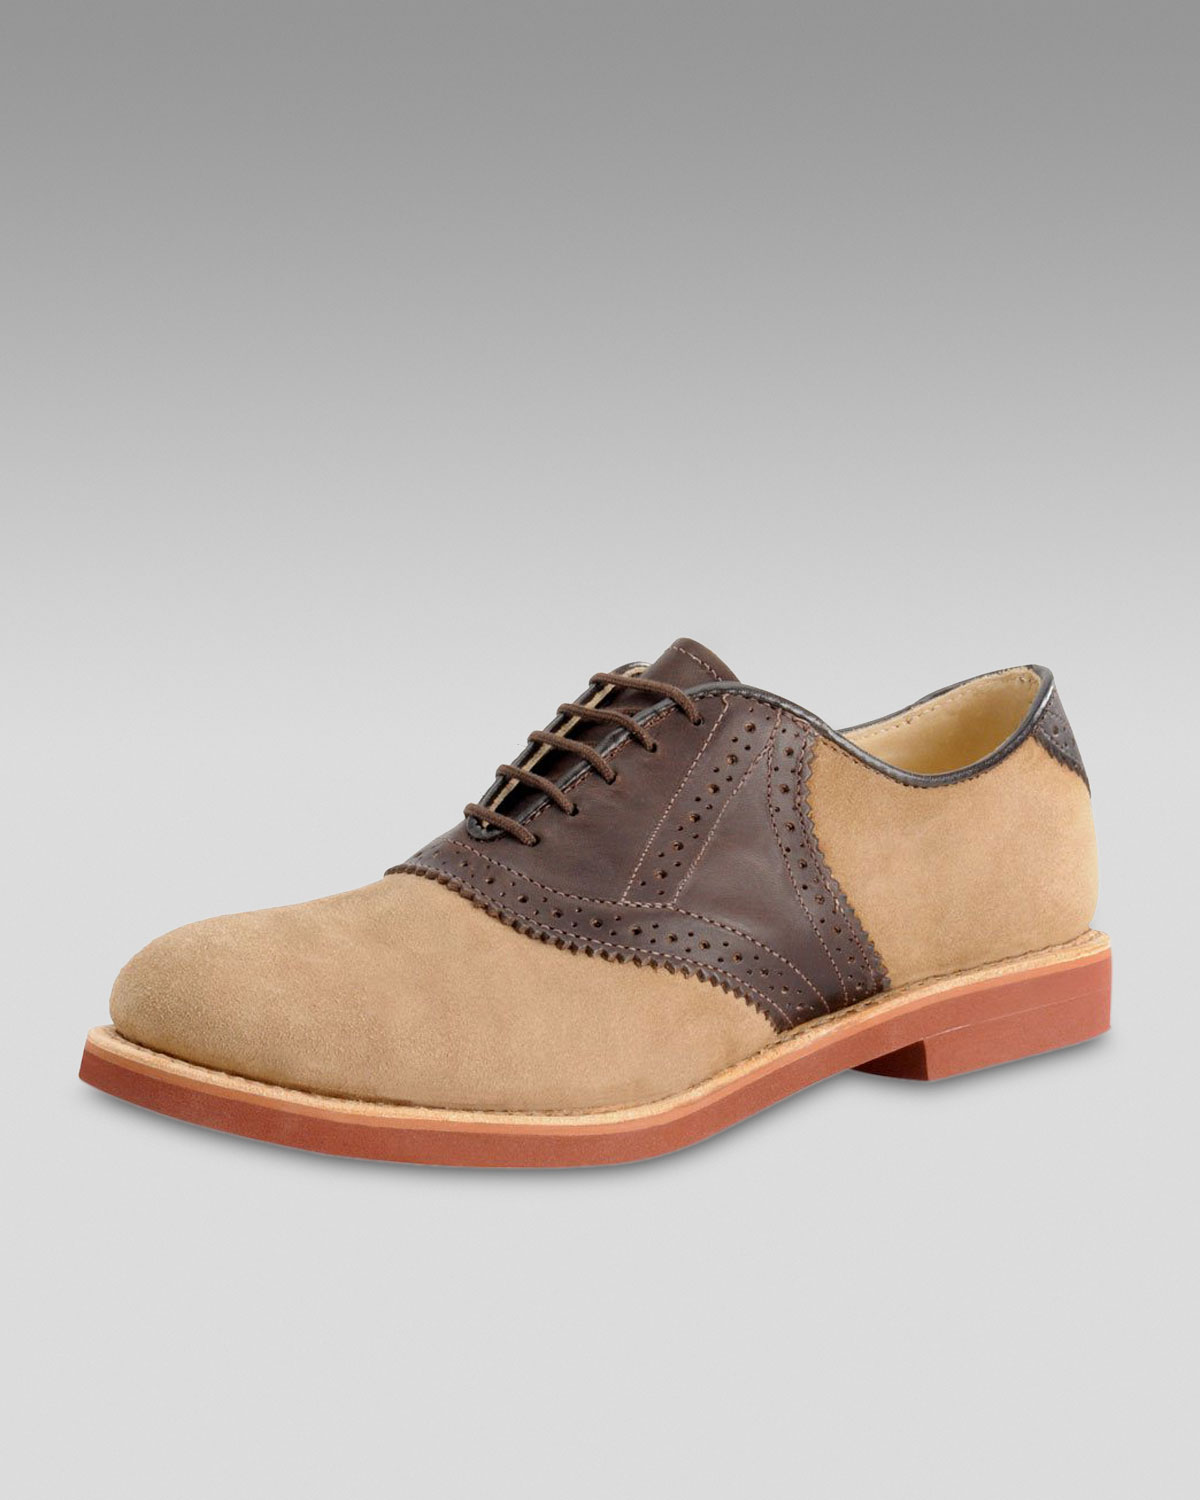 Nubuck Saddle Shoe in Tan/Brown (Brown 